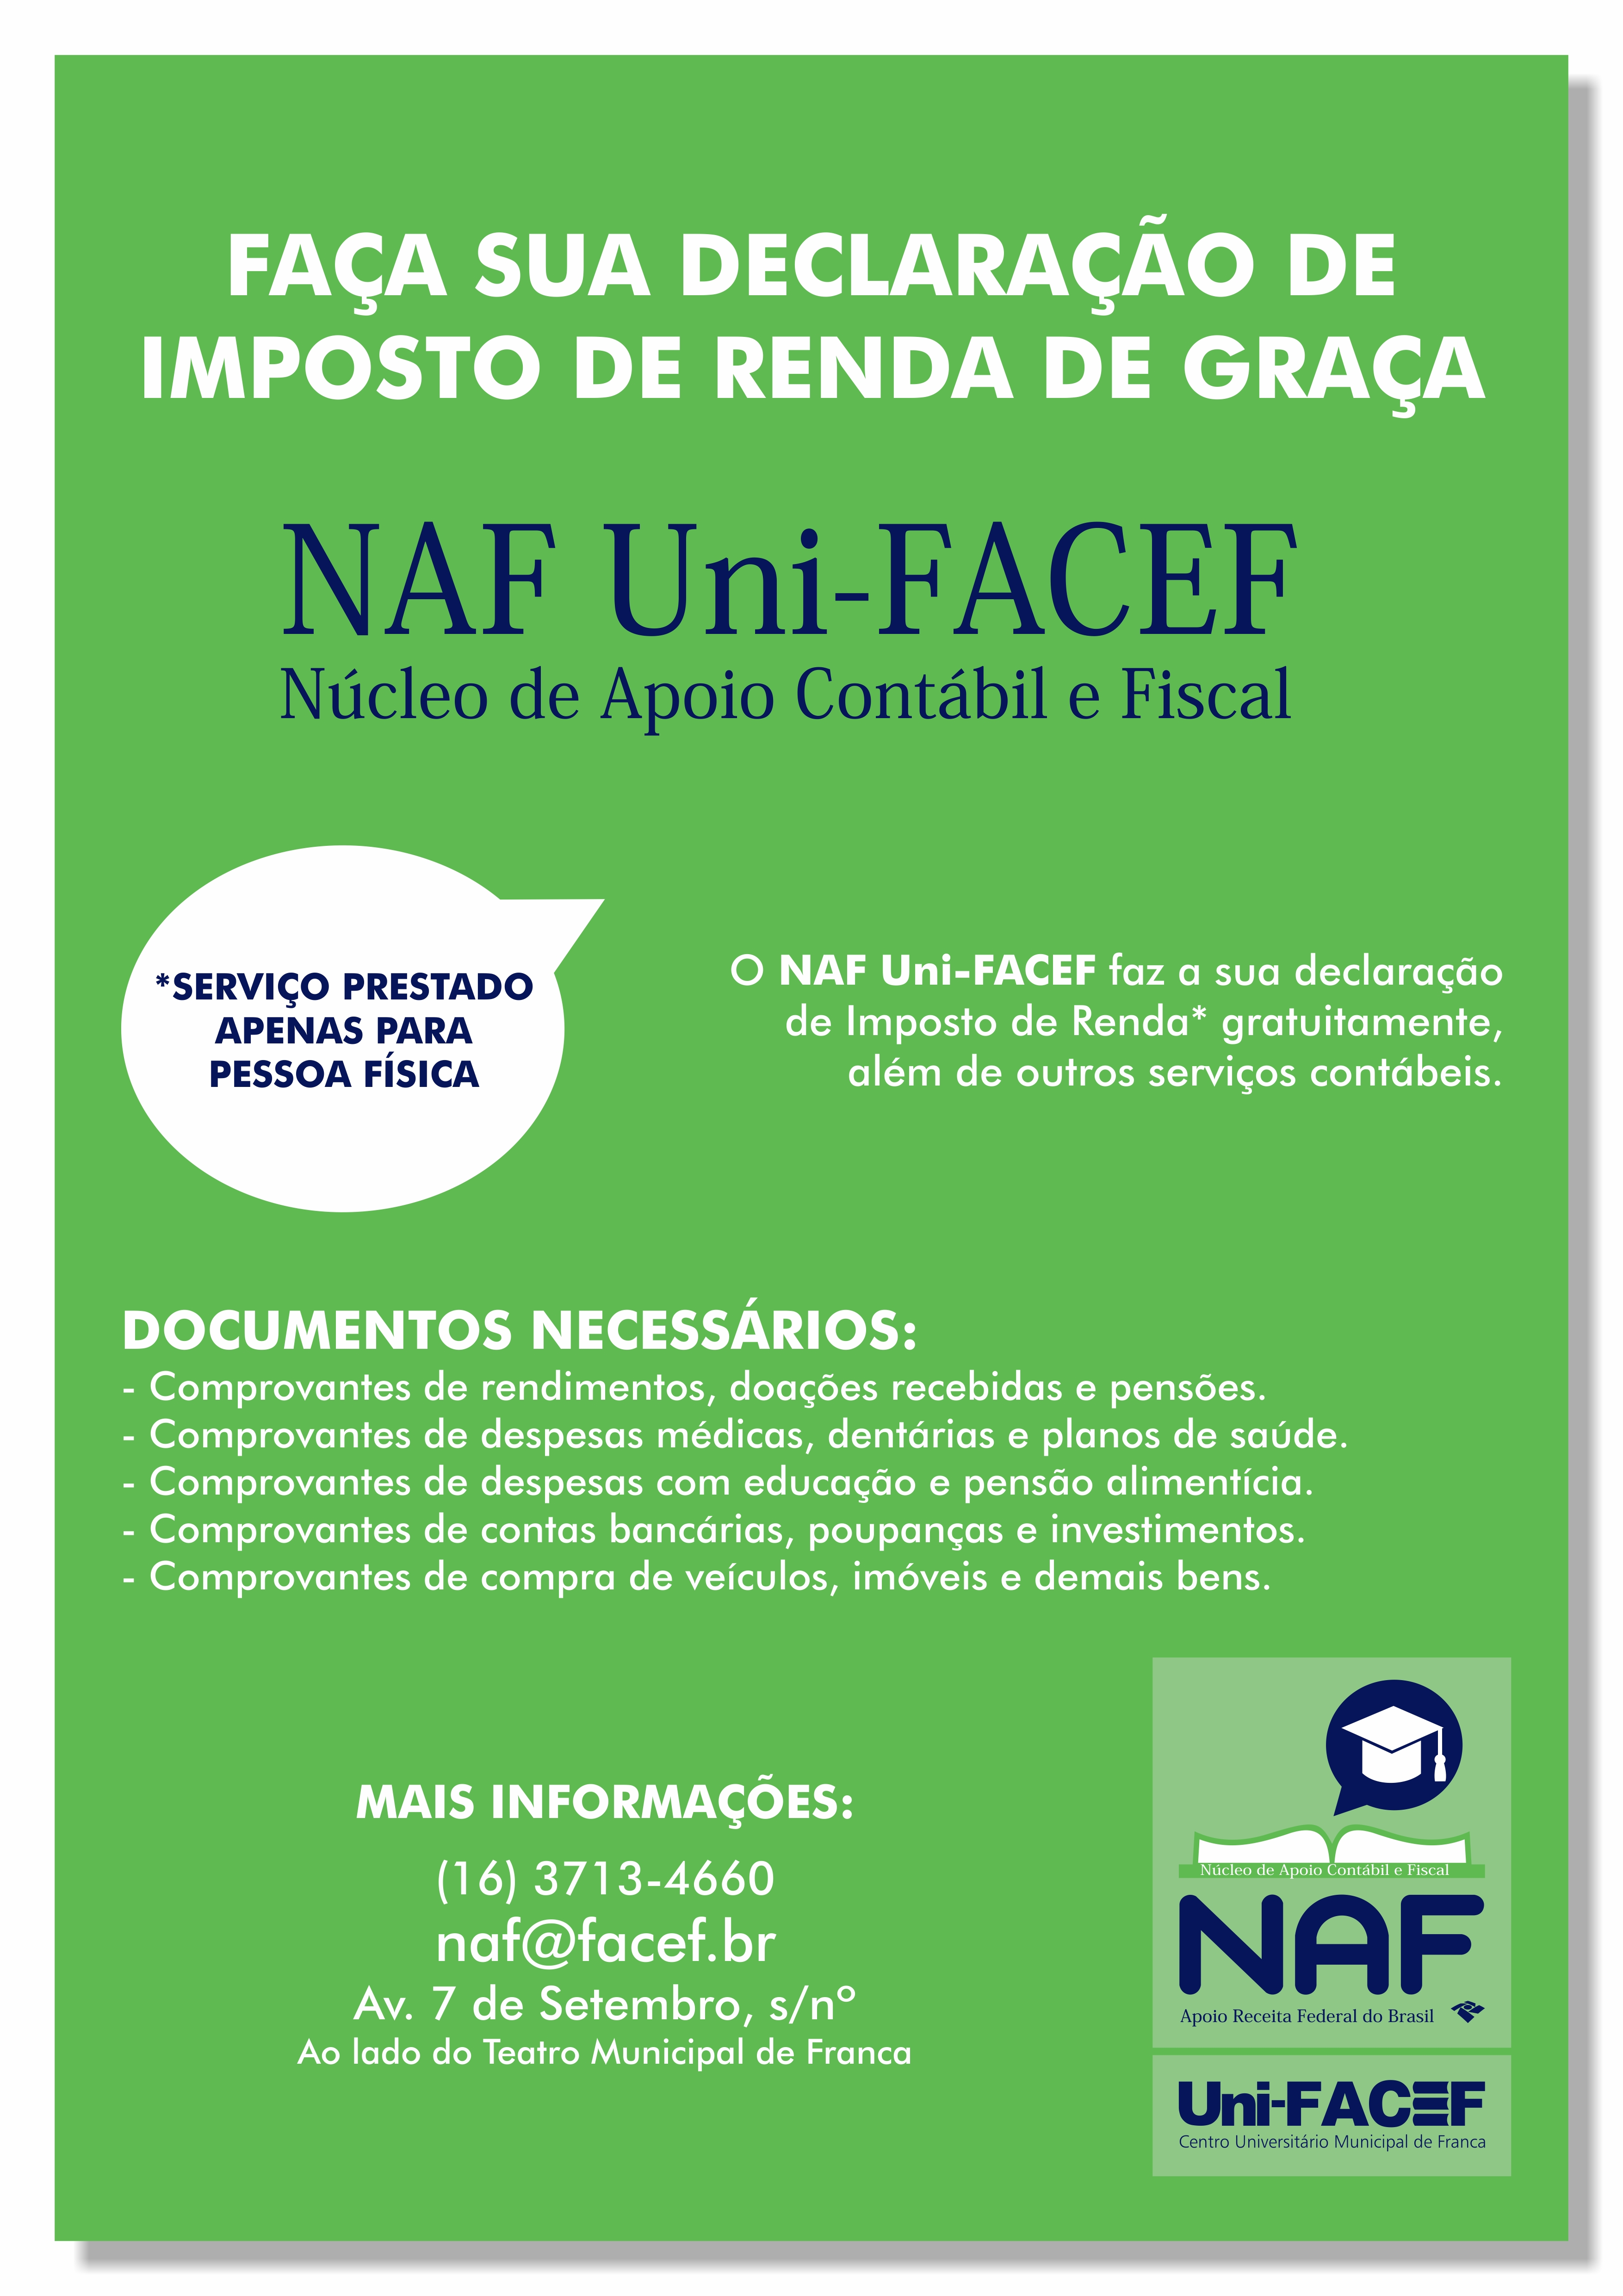 NAF Uni-FACEF faz declaração de Imposto de Renda de pessoa física gratuitamente